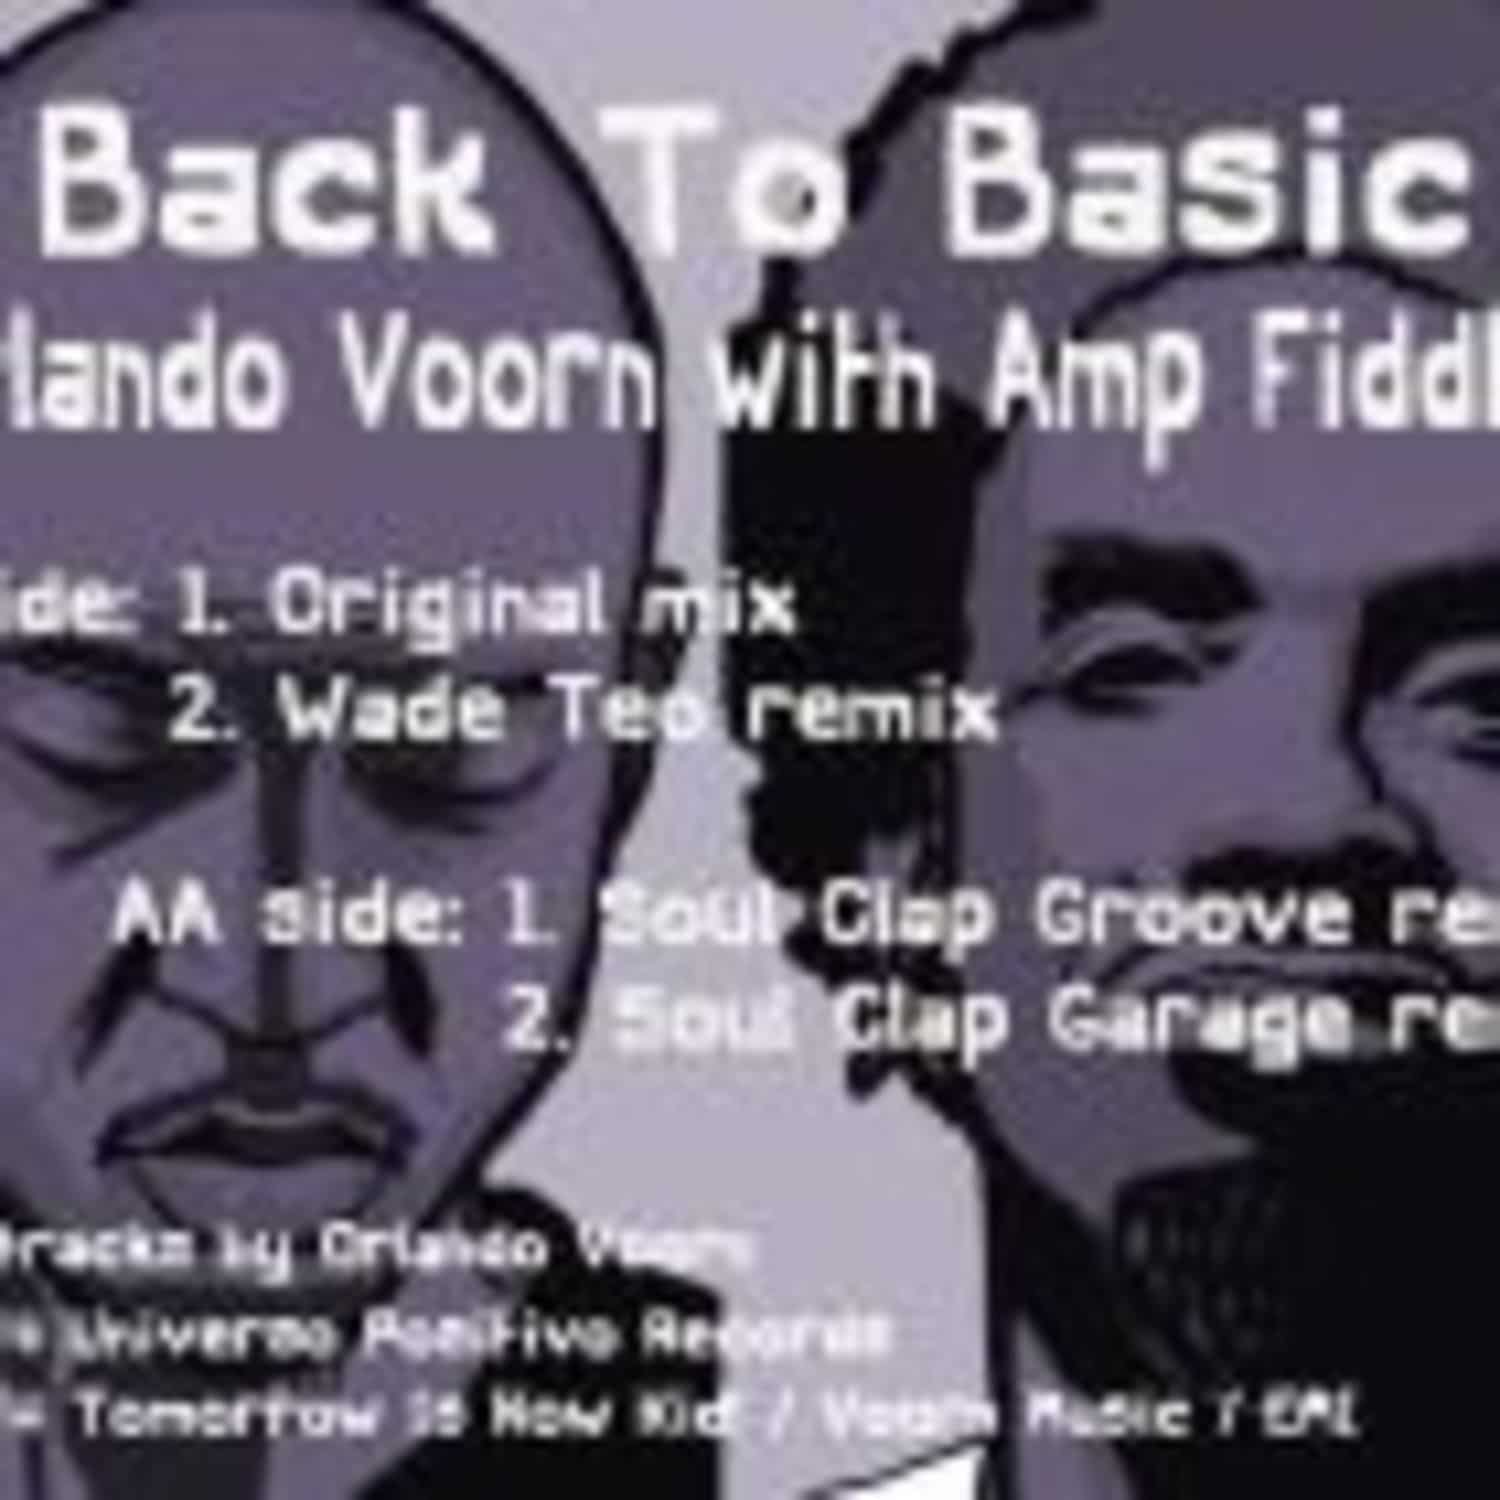 Orlando Voorn & Amp Fiddler - BACK TO BASIC